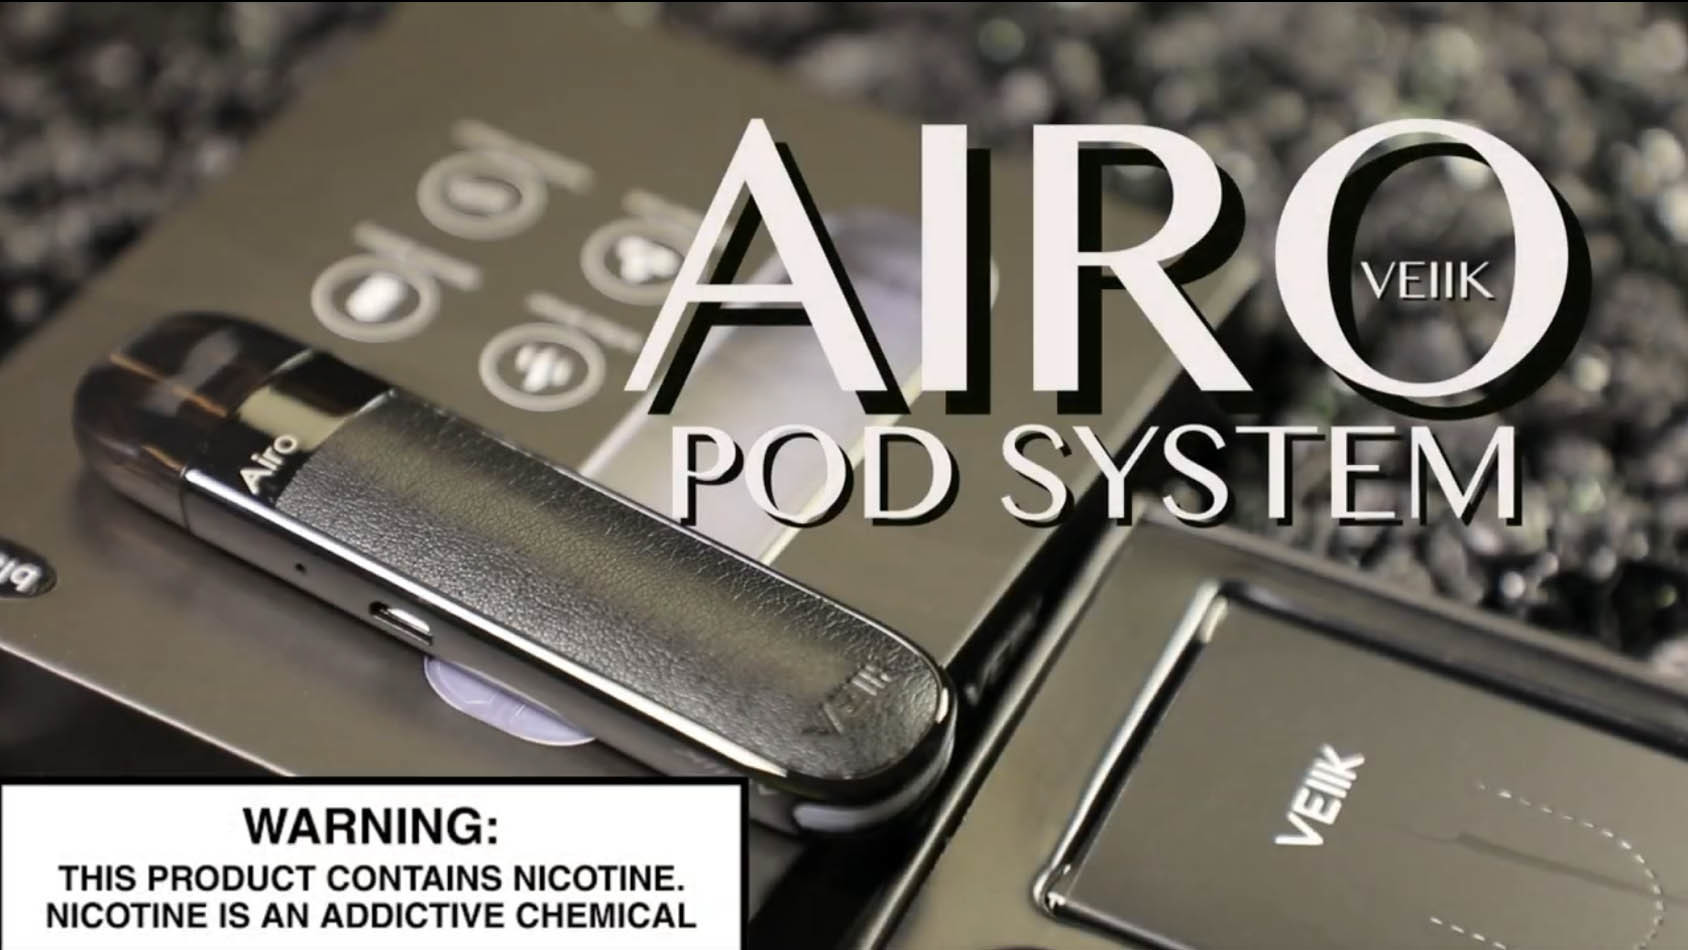 AIRO Pod System By VEIIK _Vape Pod System Review_